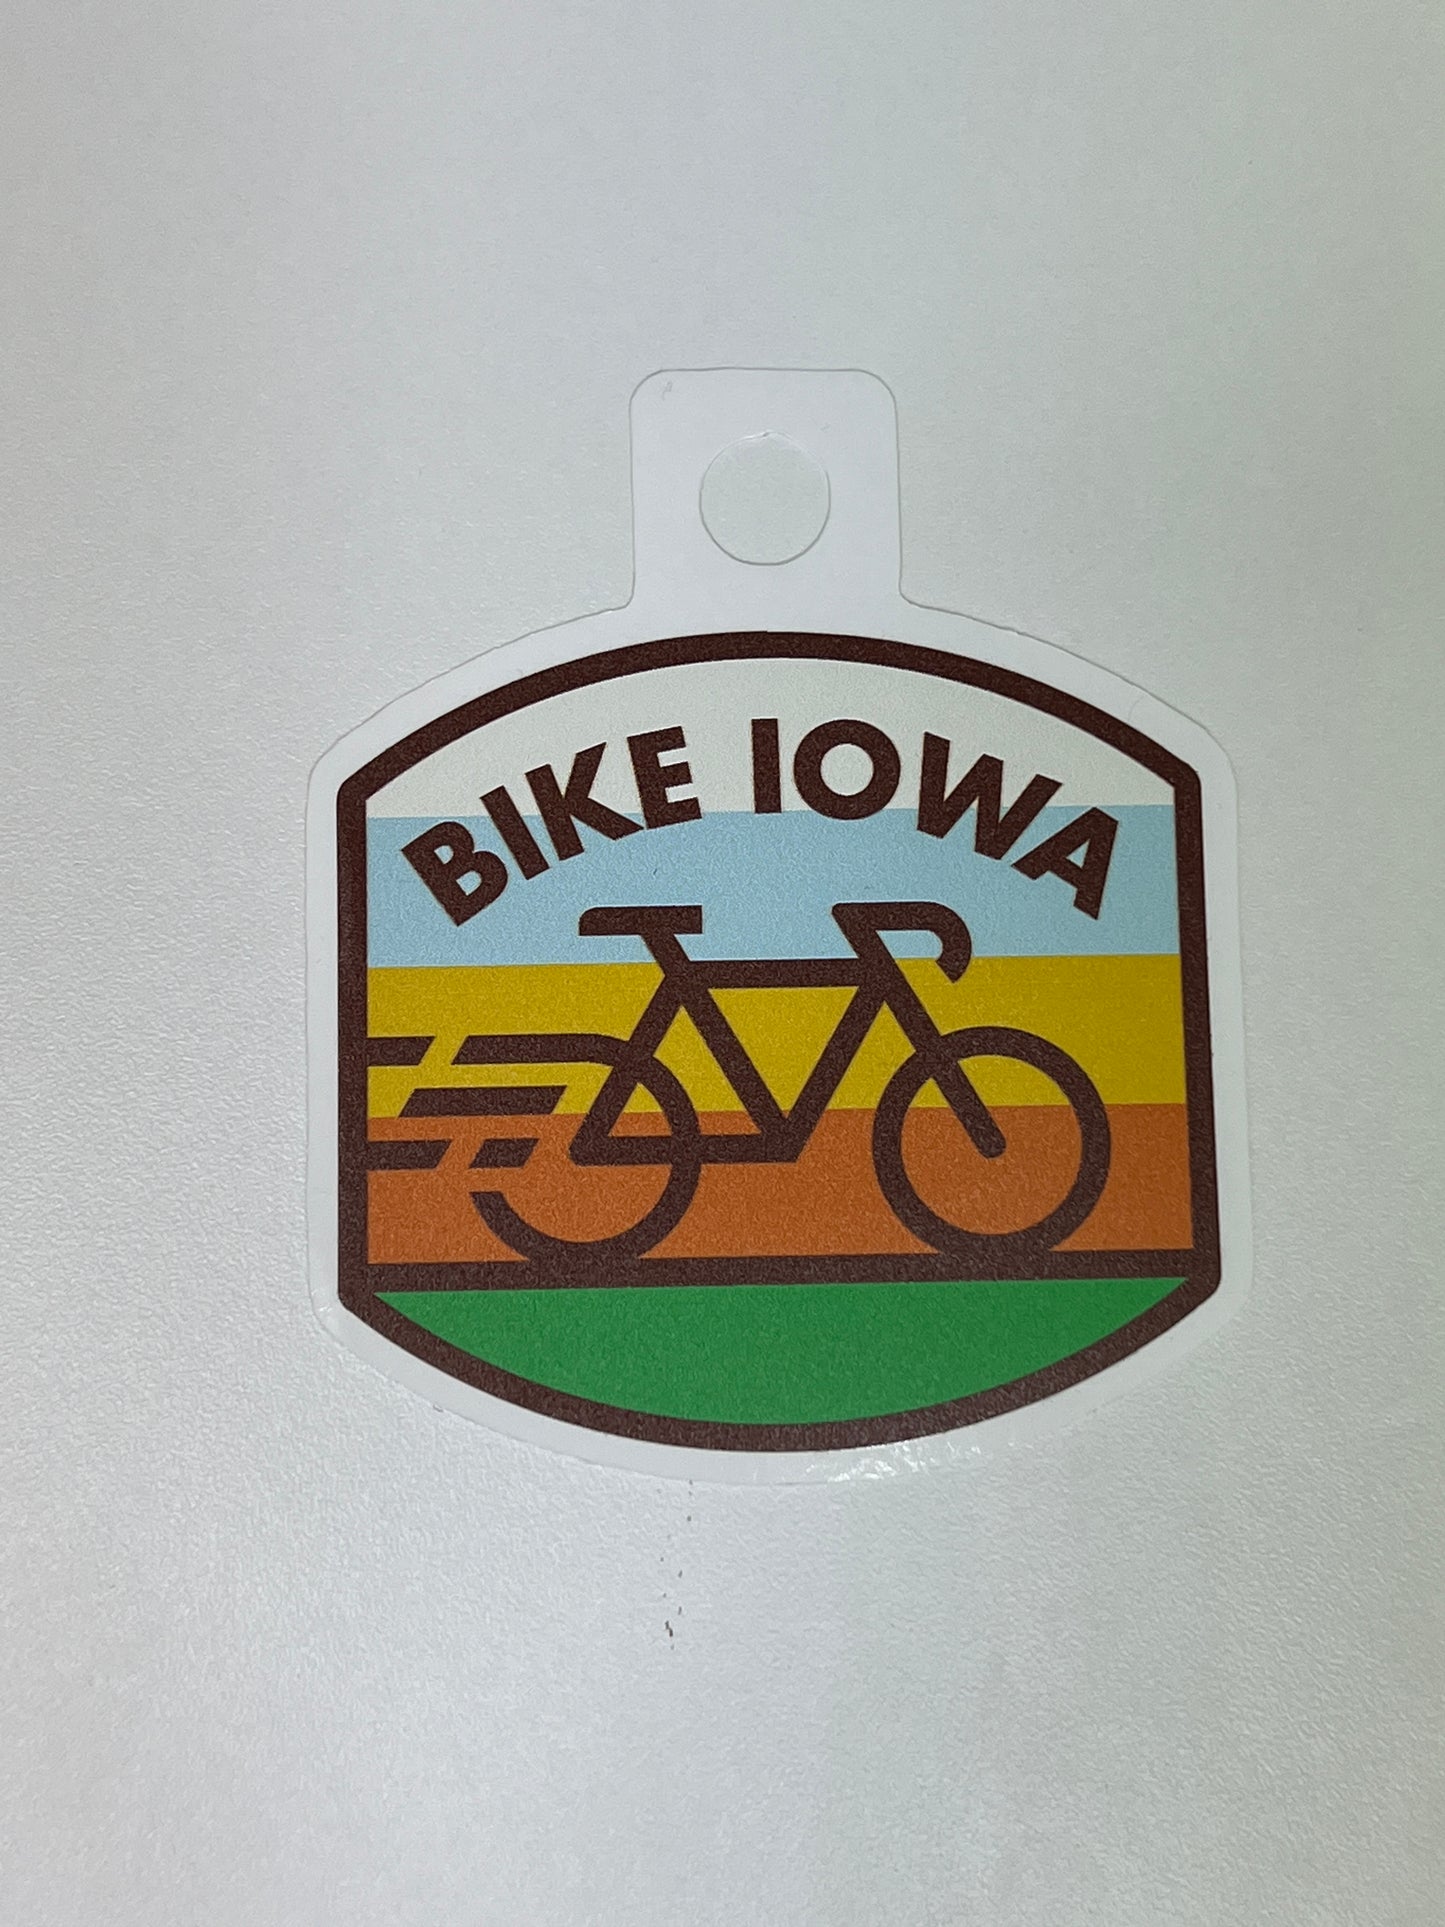 Bike Iowa Sticker